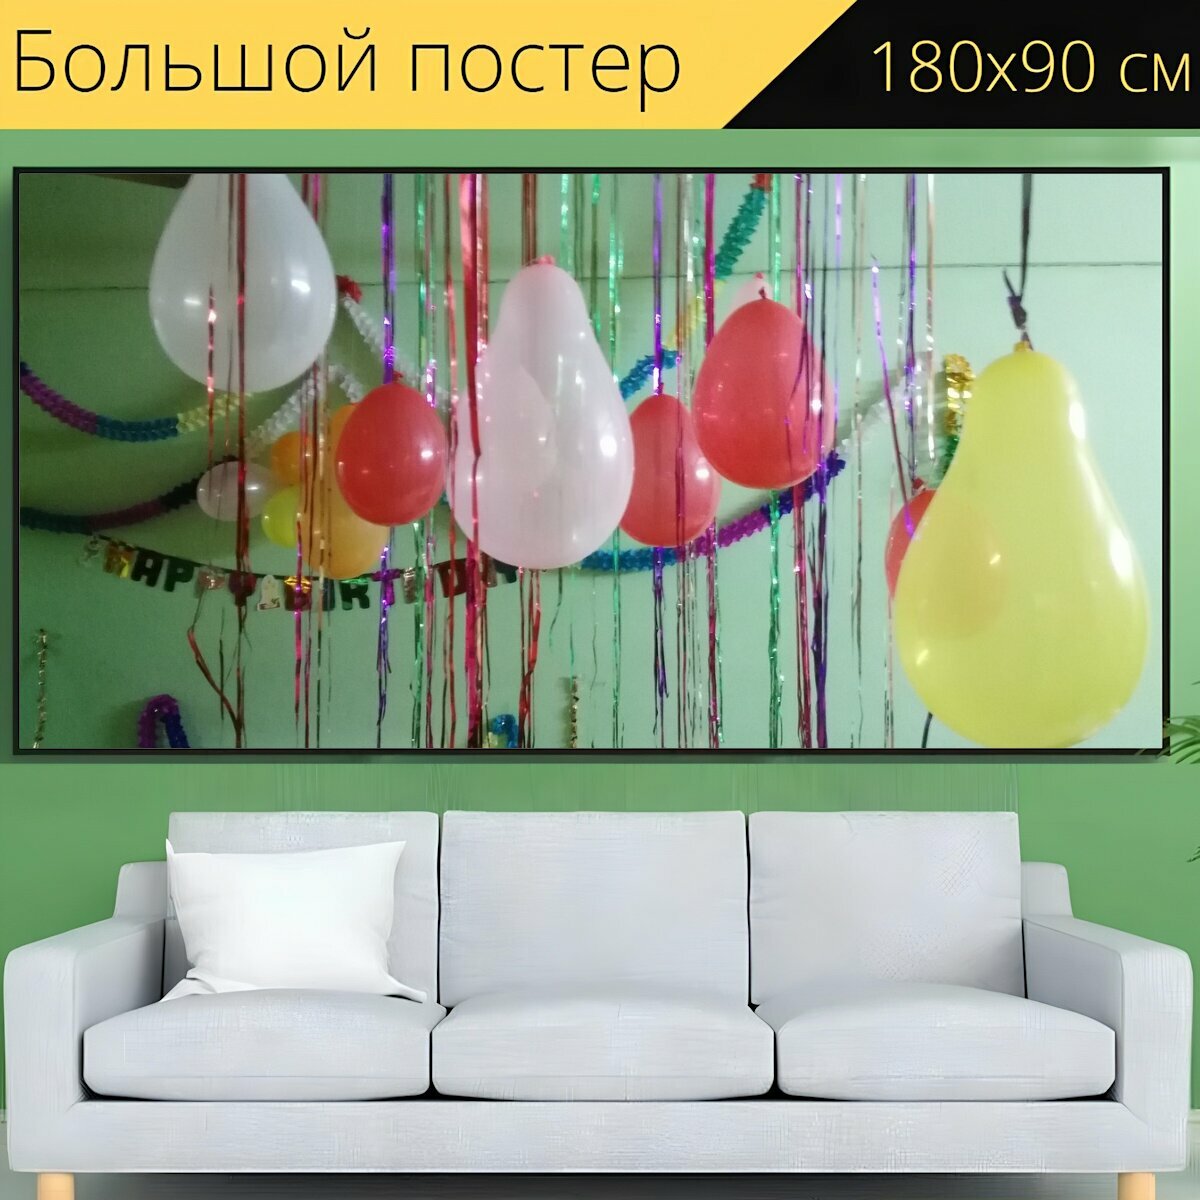 Большой постер "Надувные шарики, празднование, день рождения" 180 x 90 см. для интерьера